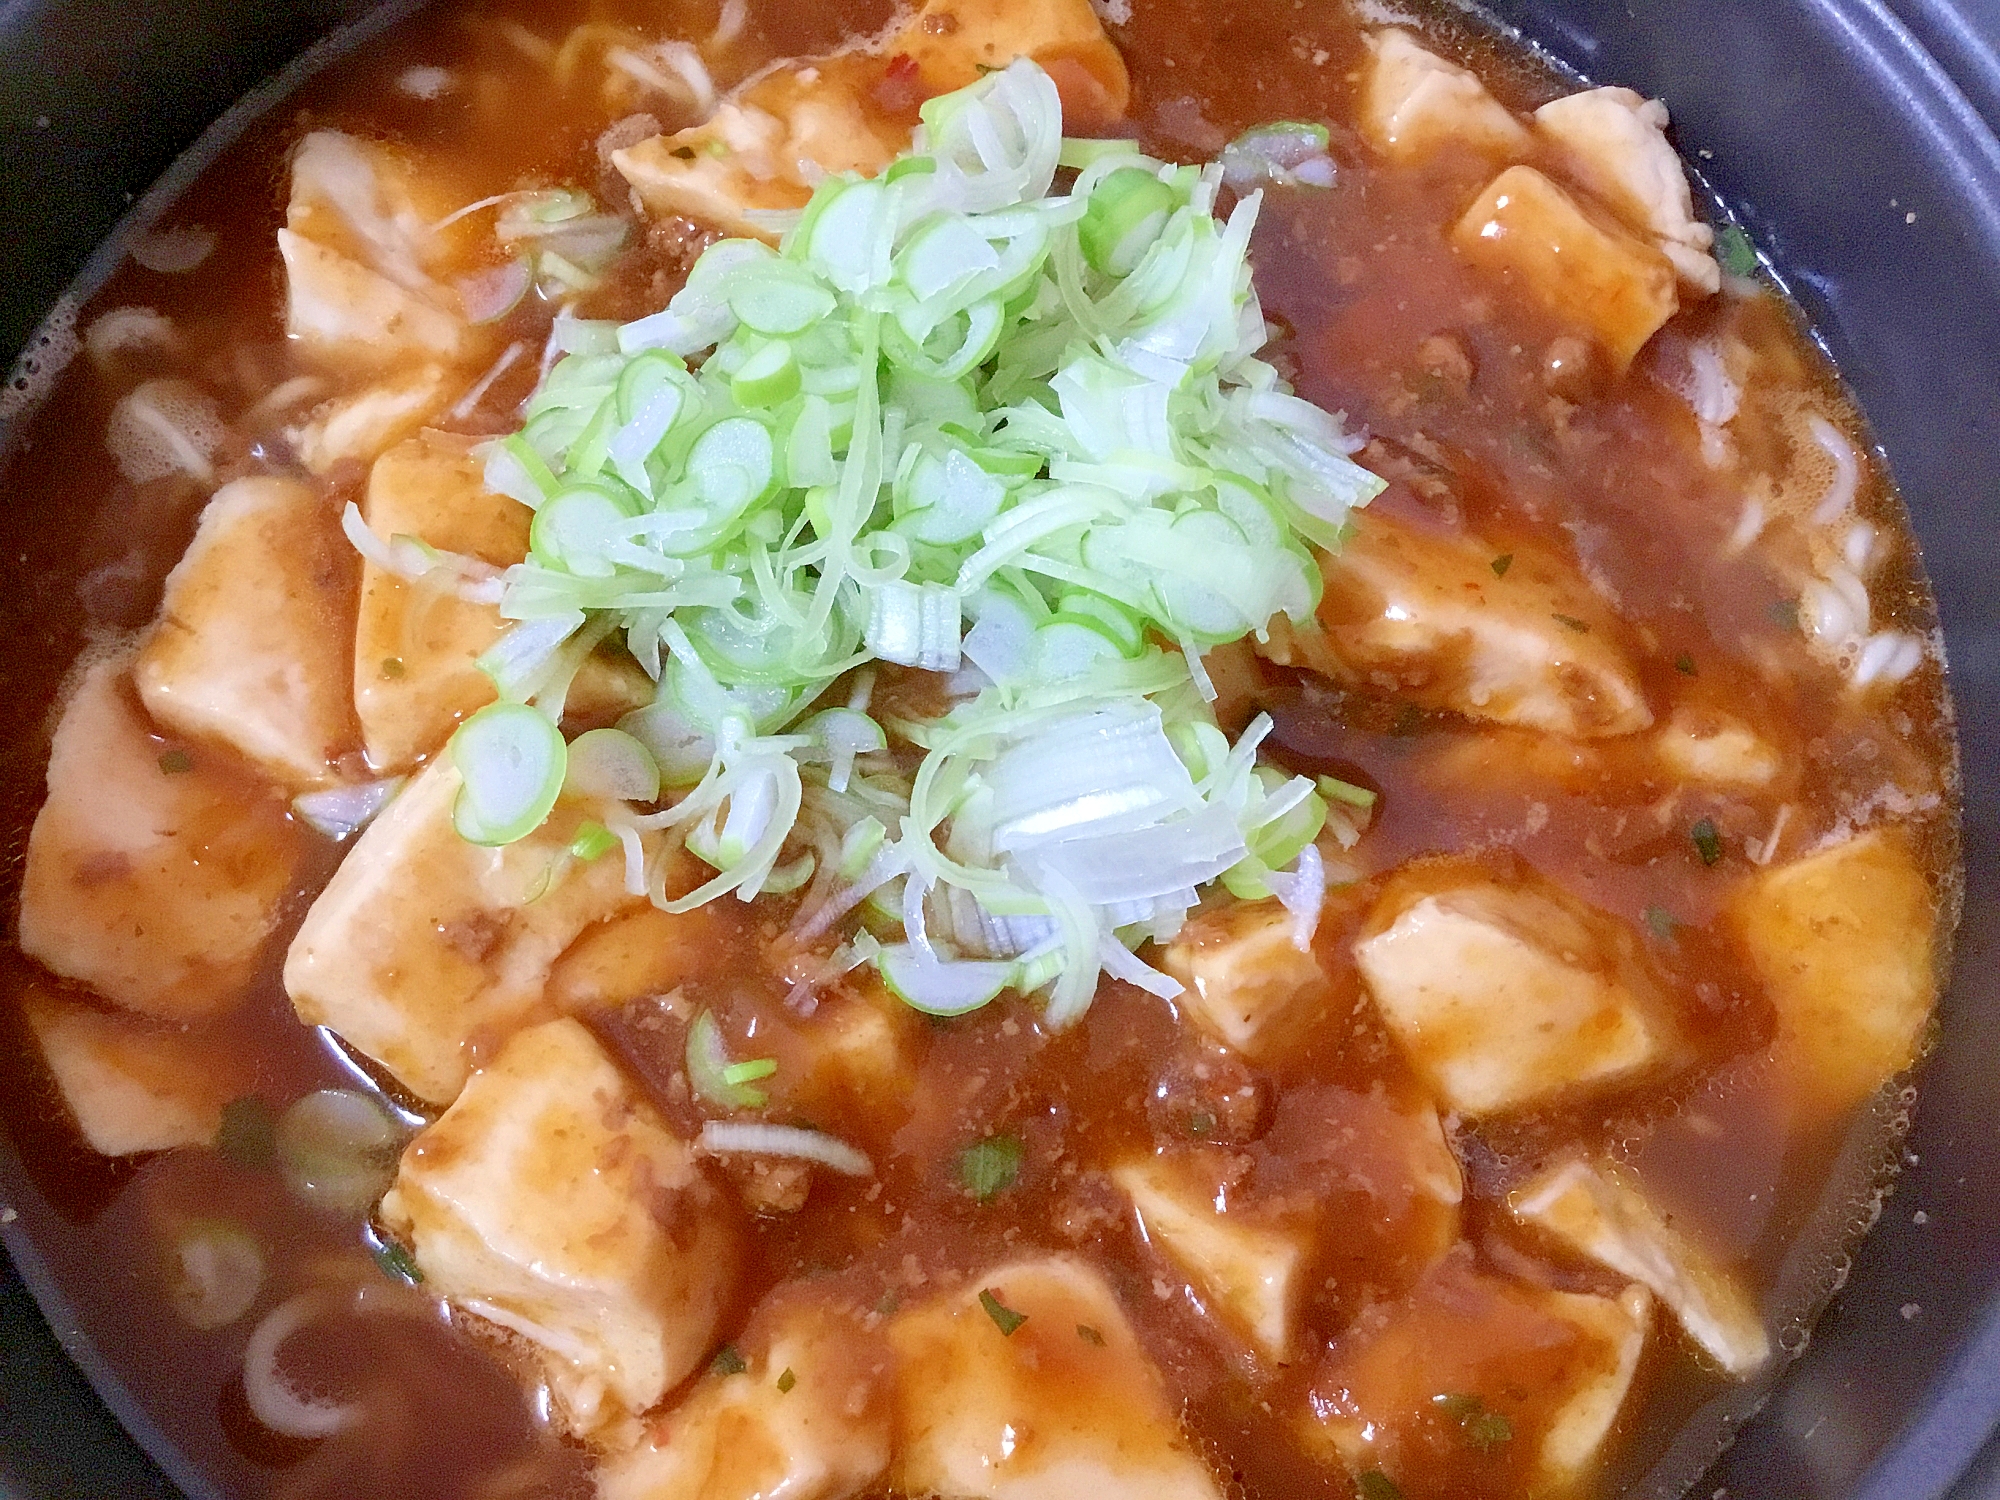 チャルメラマーボー麺